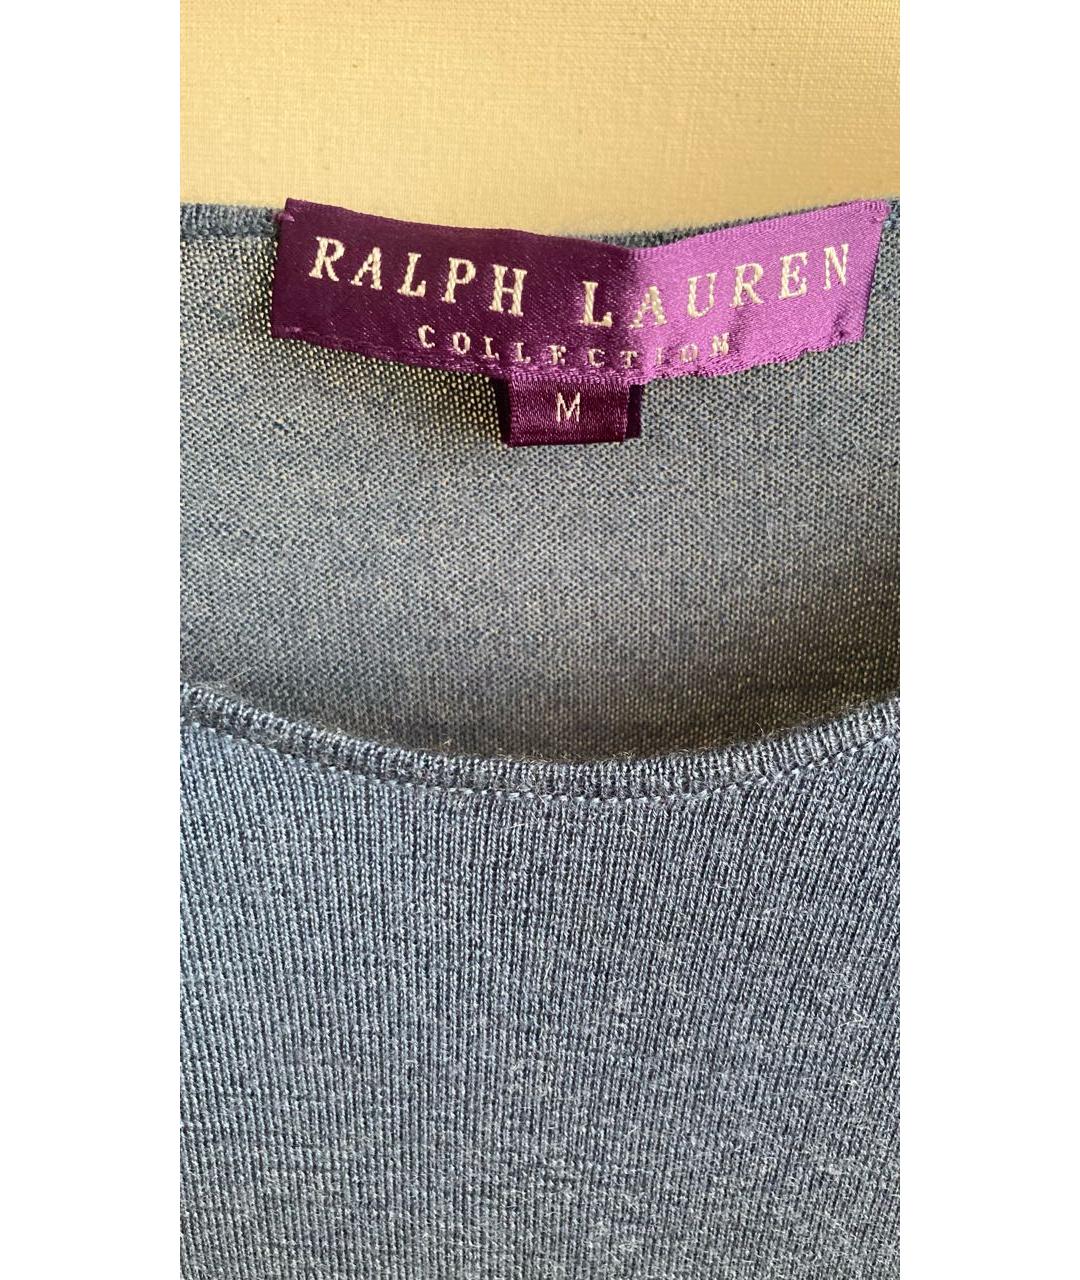 RALPH LAUREN COLLECTION Синий кашемировый джемпер / свитер, фото 4